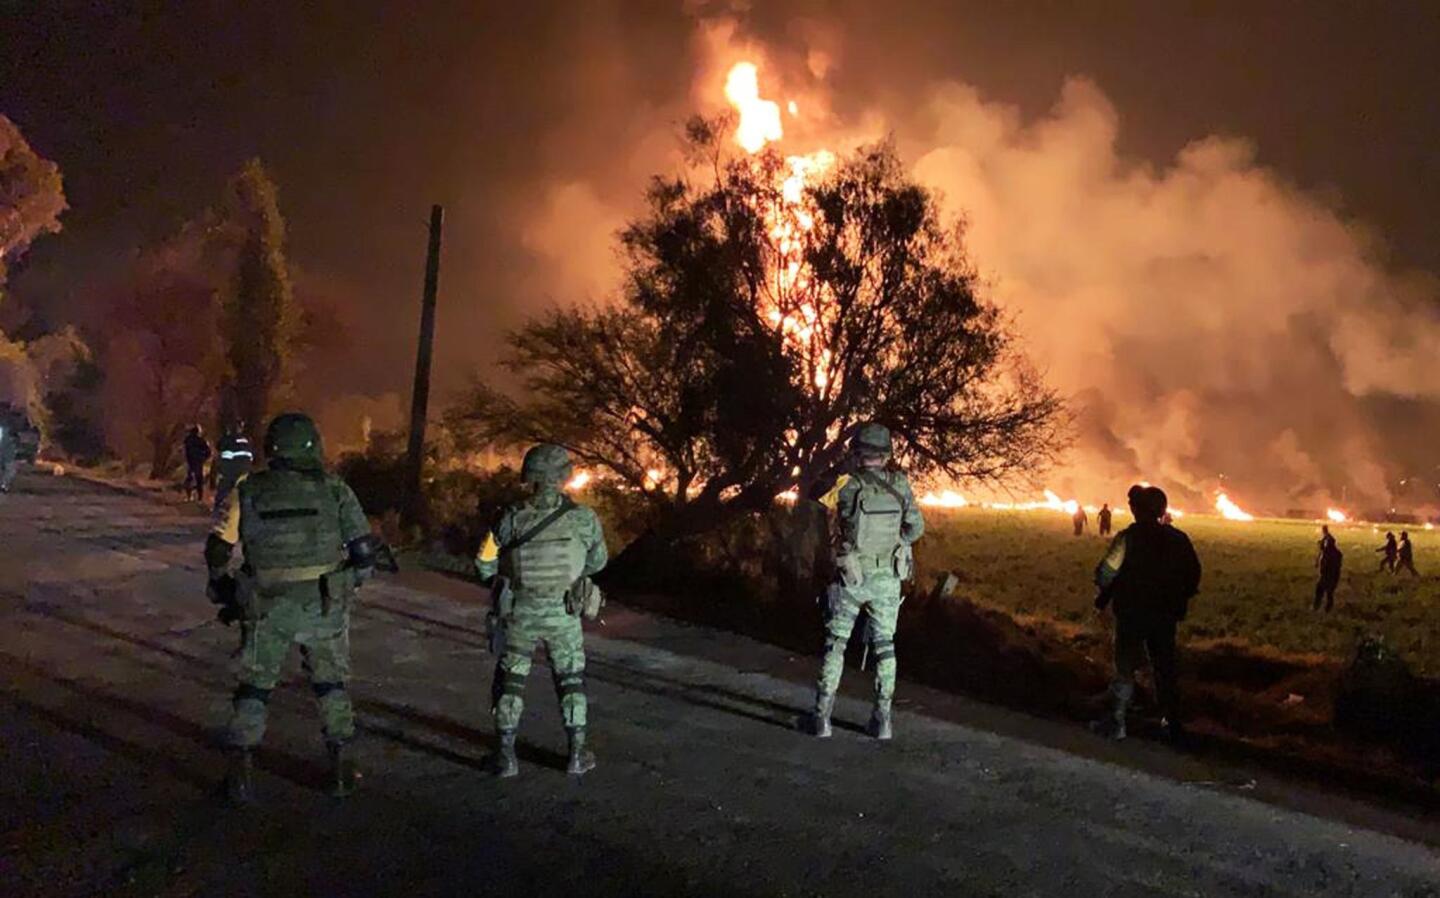 Soldados observan resguardan la zona del incendio. Una toma clandestina en un ducto de la empresa estatal Petróleos Mexicanos (Pemex) explotó en Tlahuelilpan, en el estado de Hidalgo, a unos 100 kilómetros (62 millas) al norte de Ciudad de México; decenas de personas murieron calcinadas.